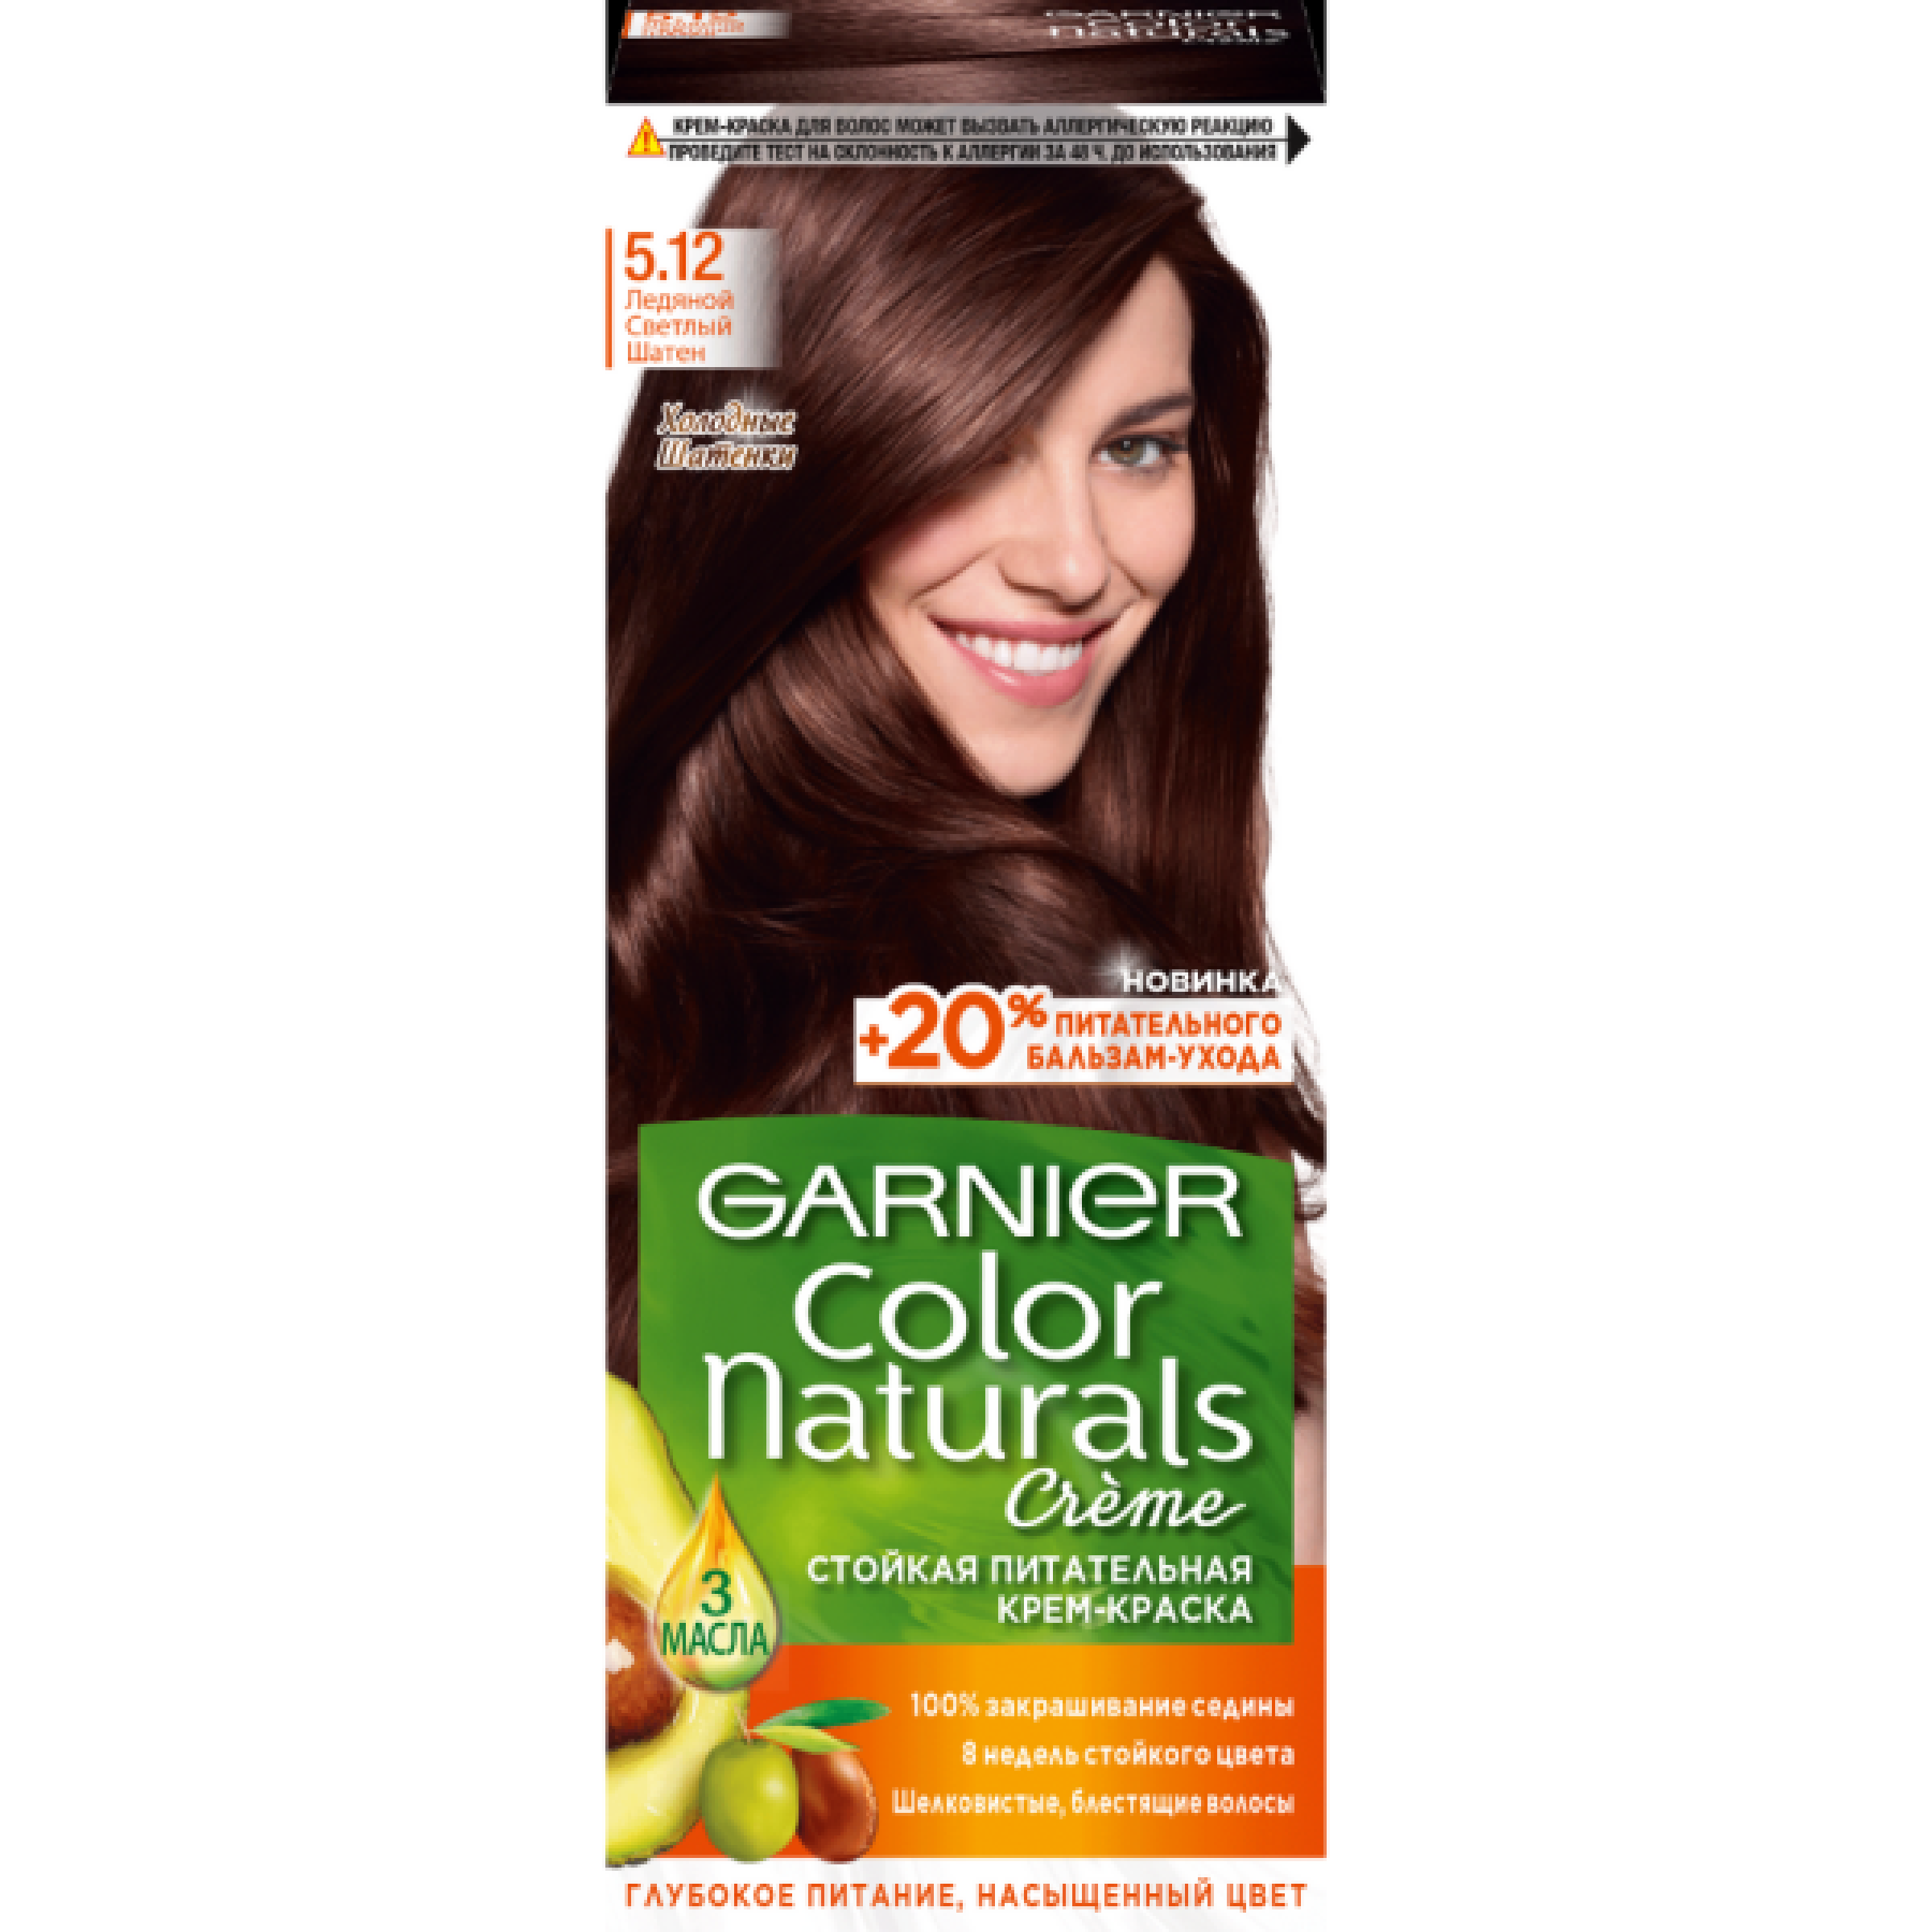 Стойкая крем-краска для волос Garnier Color Naturals с 3 маслами, оттенок 5.12, Ледяной Светлый Шатен, 110 мл